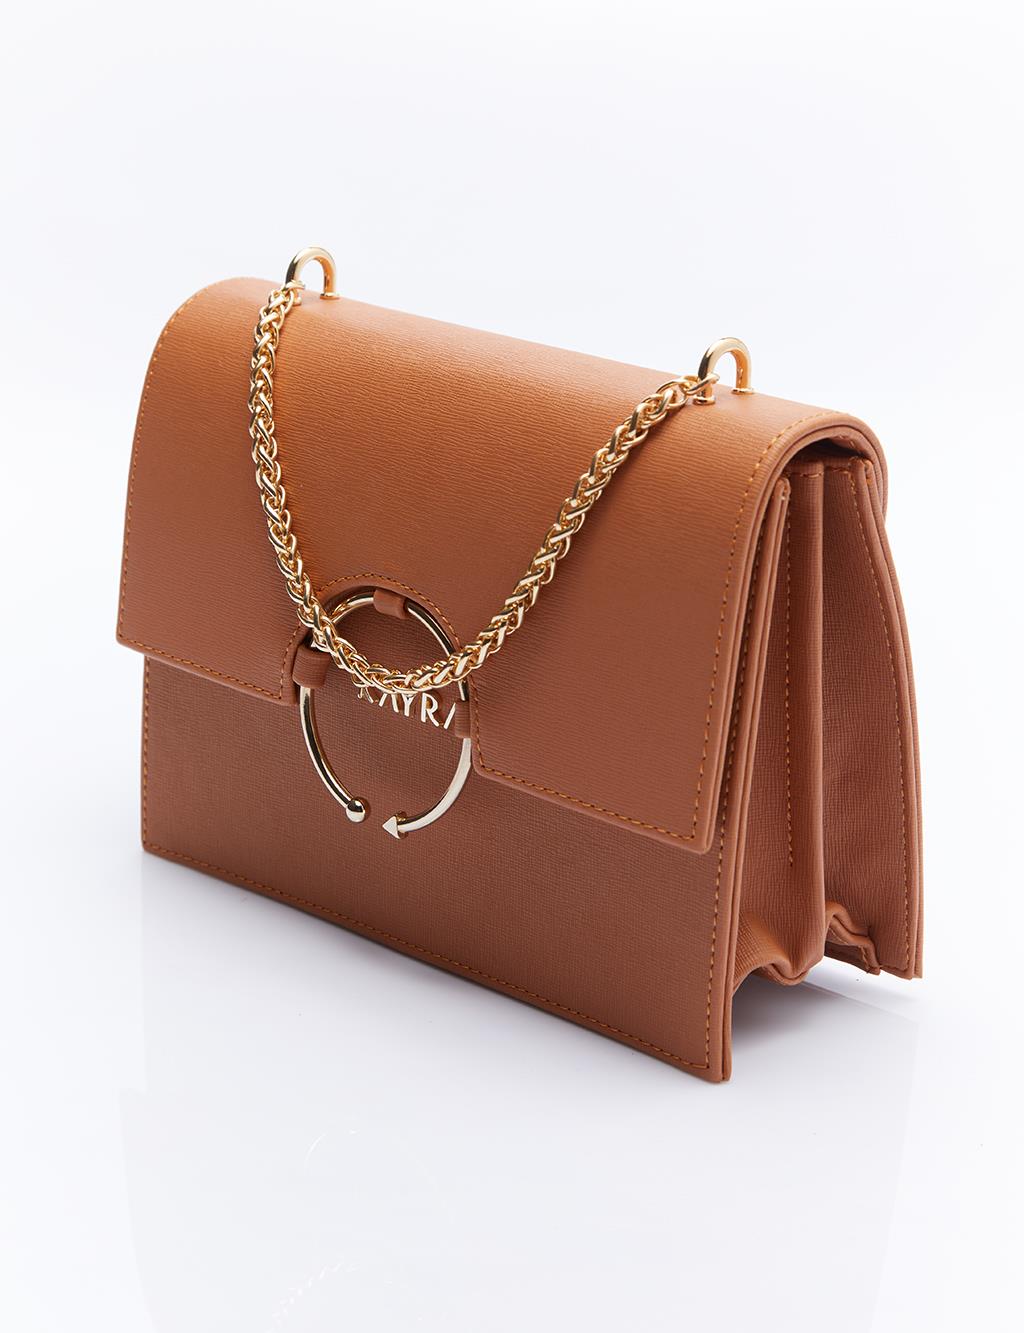 Дизайнерская сумка с ручкой-цепочкой, коричневая Kayra amor taba süet bot